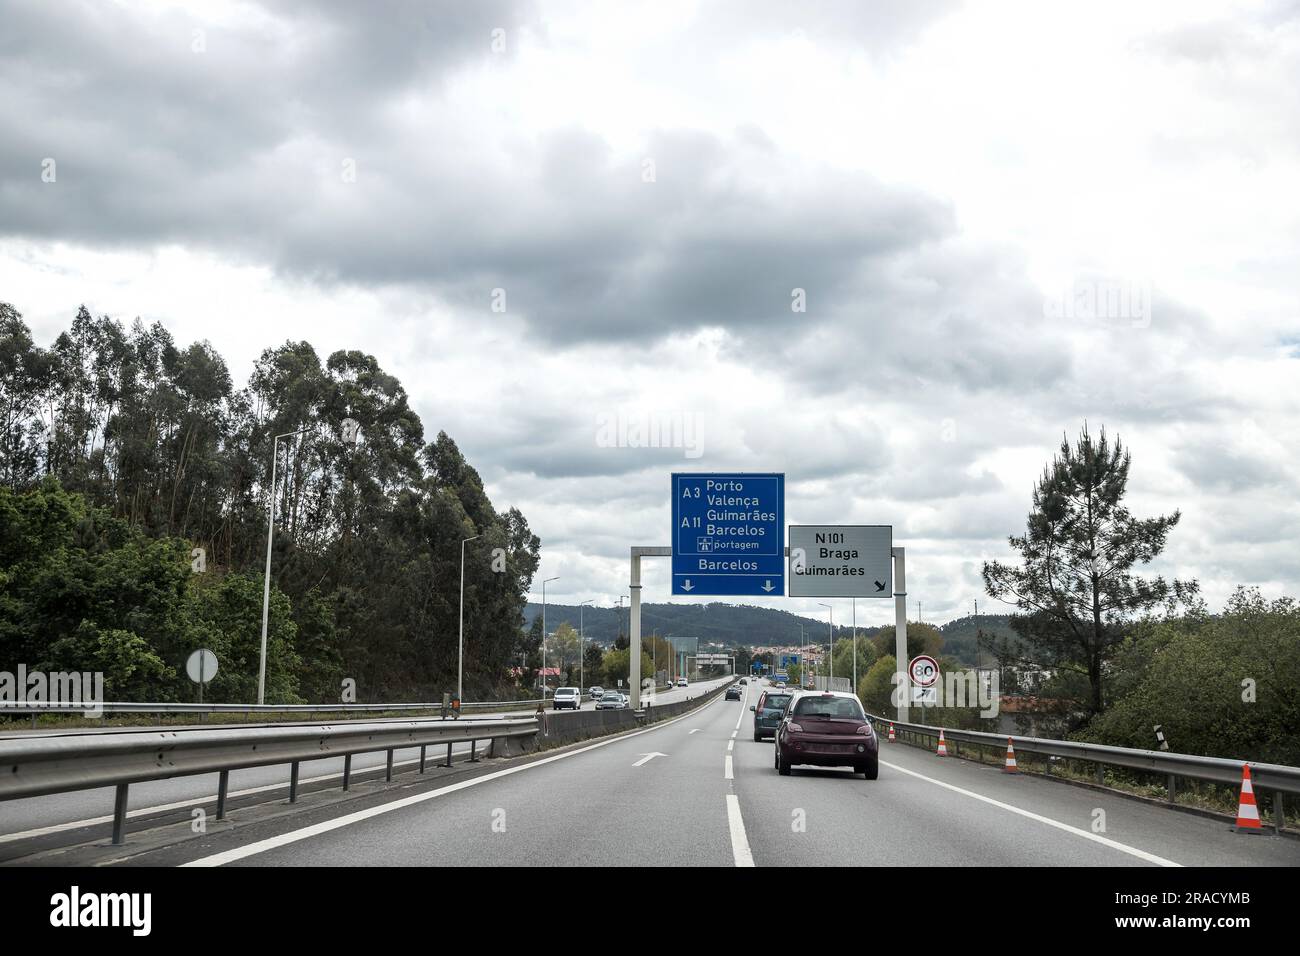 Section de l'autoroute A3, Douro Minho, qui relie Porto à Valenca, Portugal. Affluence de véhicules dans les deux sens. Banque D'Images